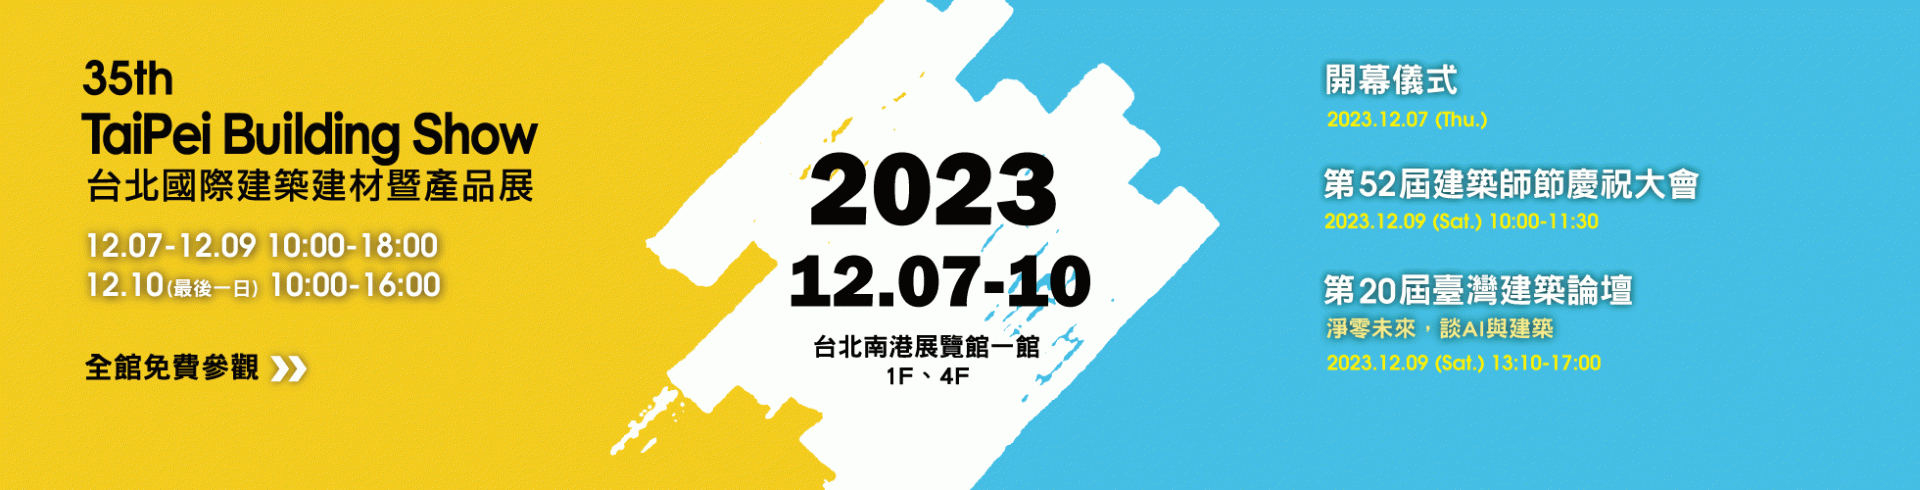 2023 Taipei Building Show